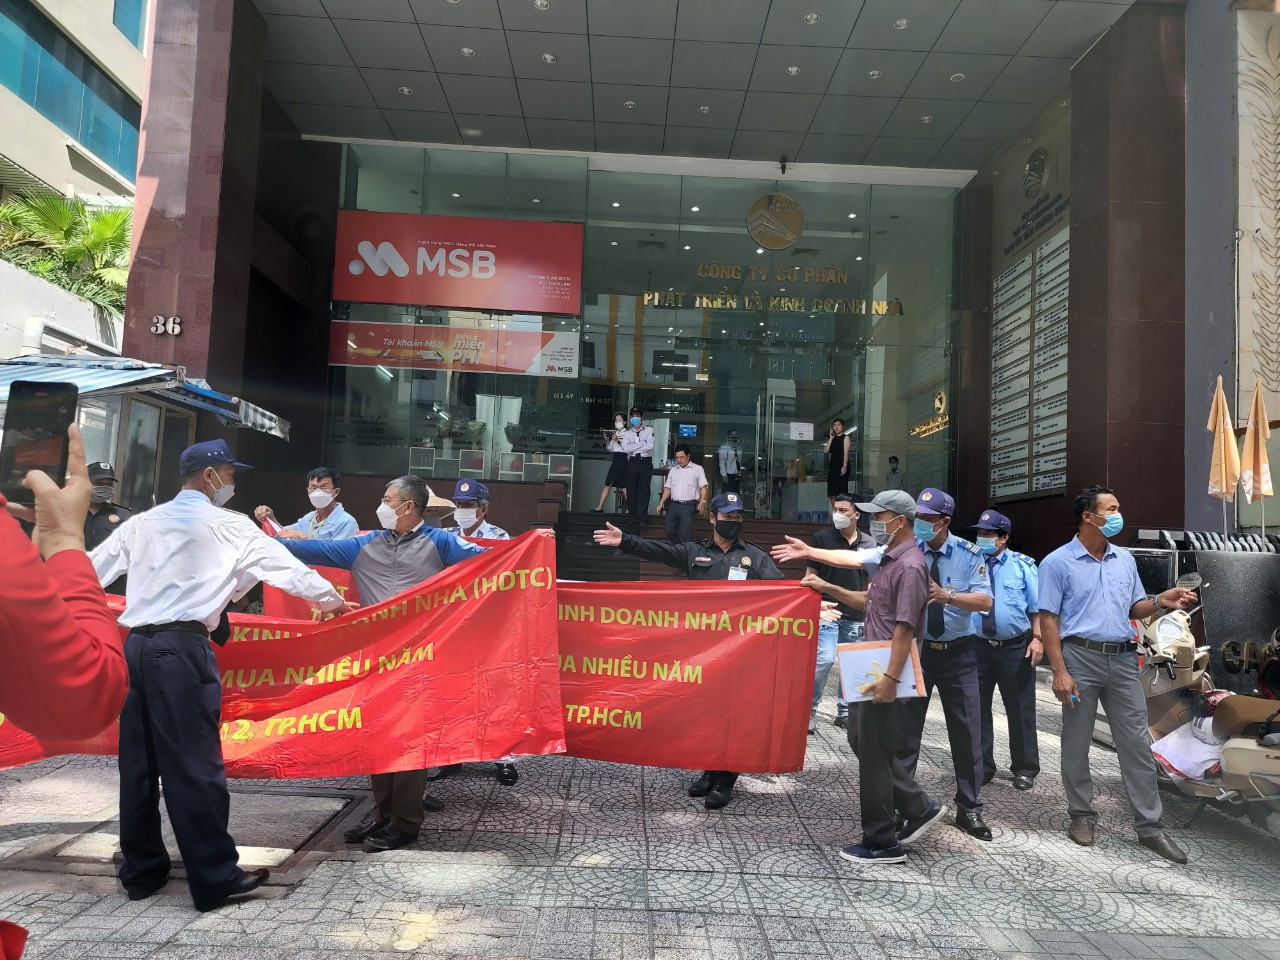 Sáng ngày 22/9, hàng trăm cư dân dự án KDC An Sương đã kéo nhau lên trụ sở của Công ty HDTC để căng băng rôn yêu cầu chủ đầu tư bàn giao sổ đỏ.